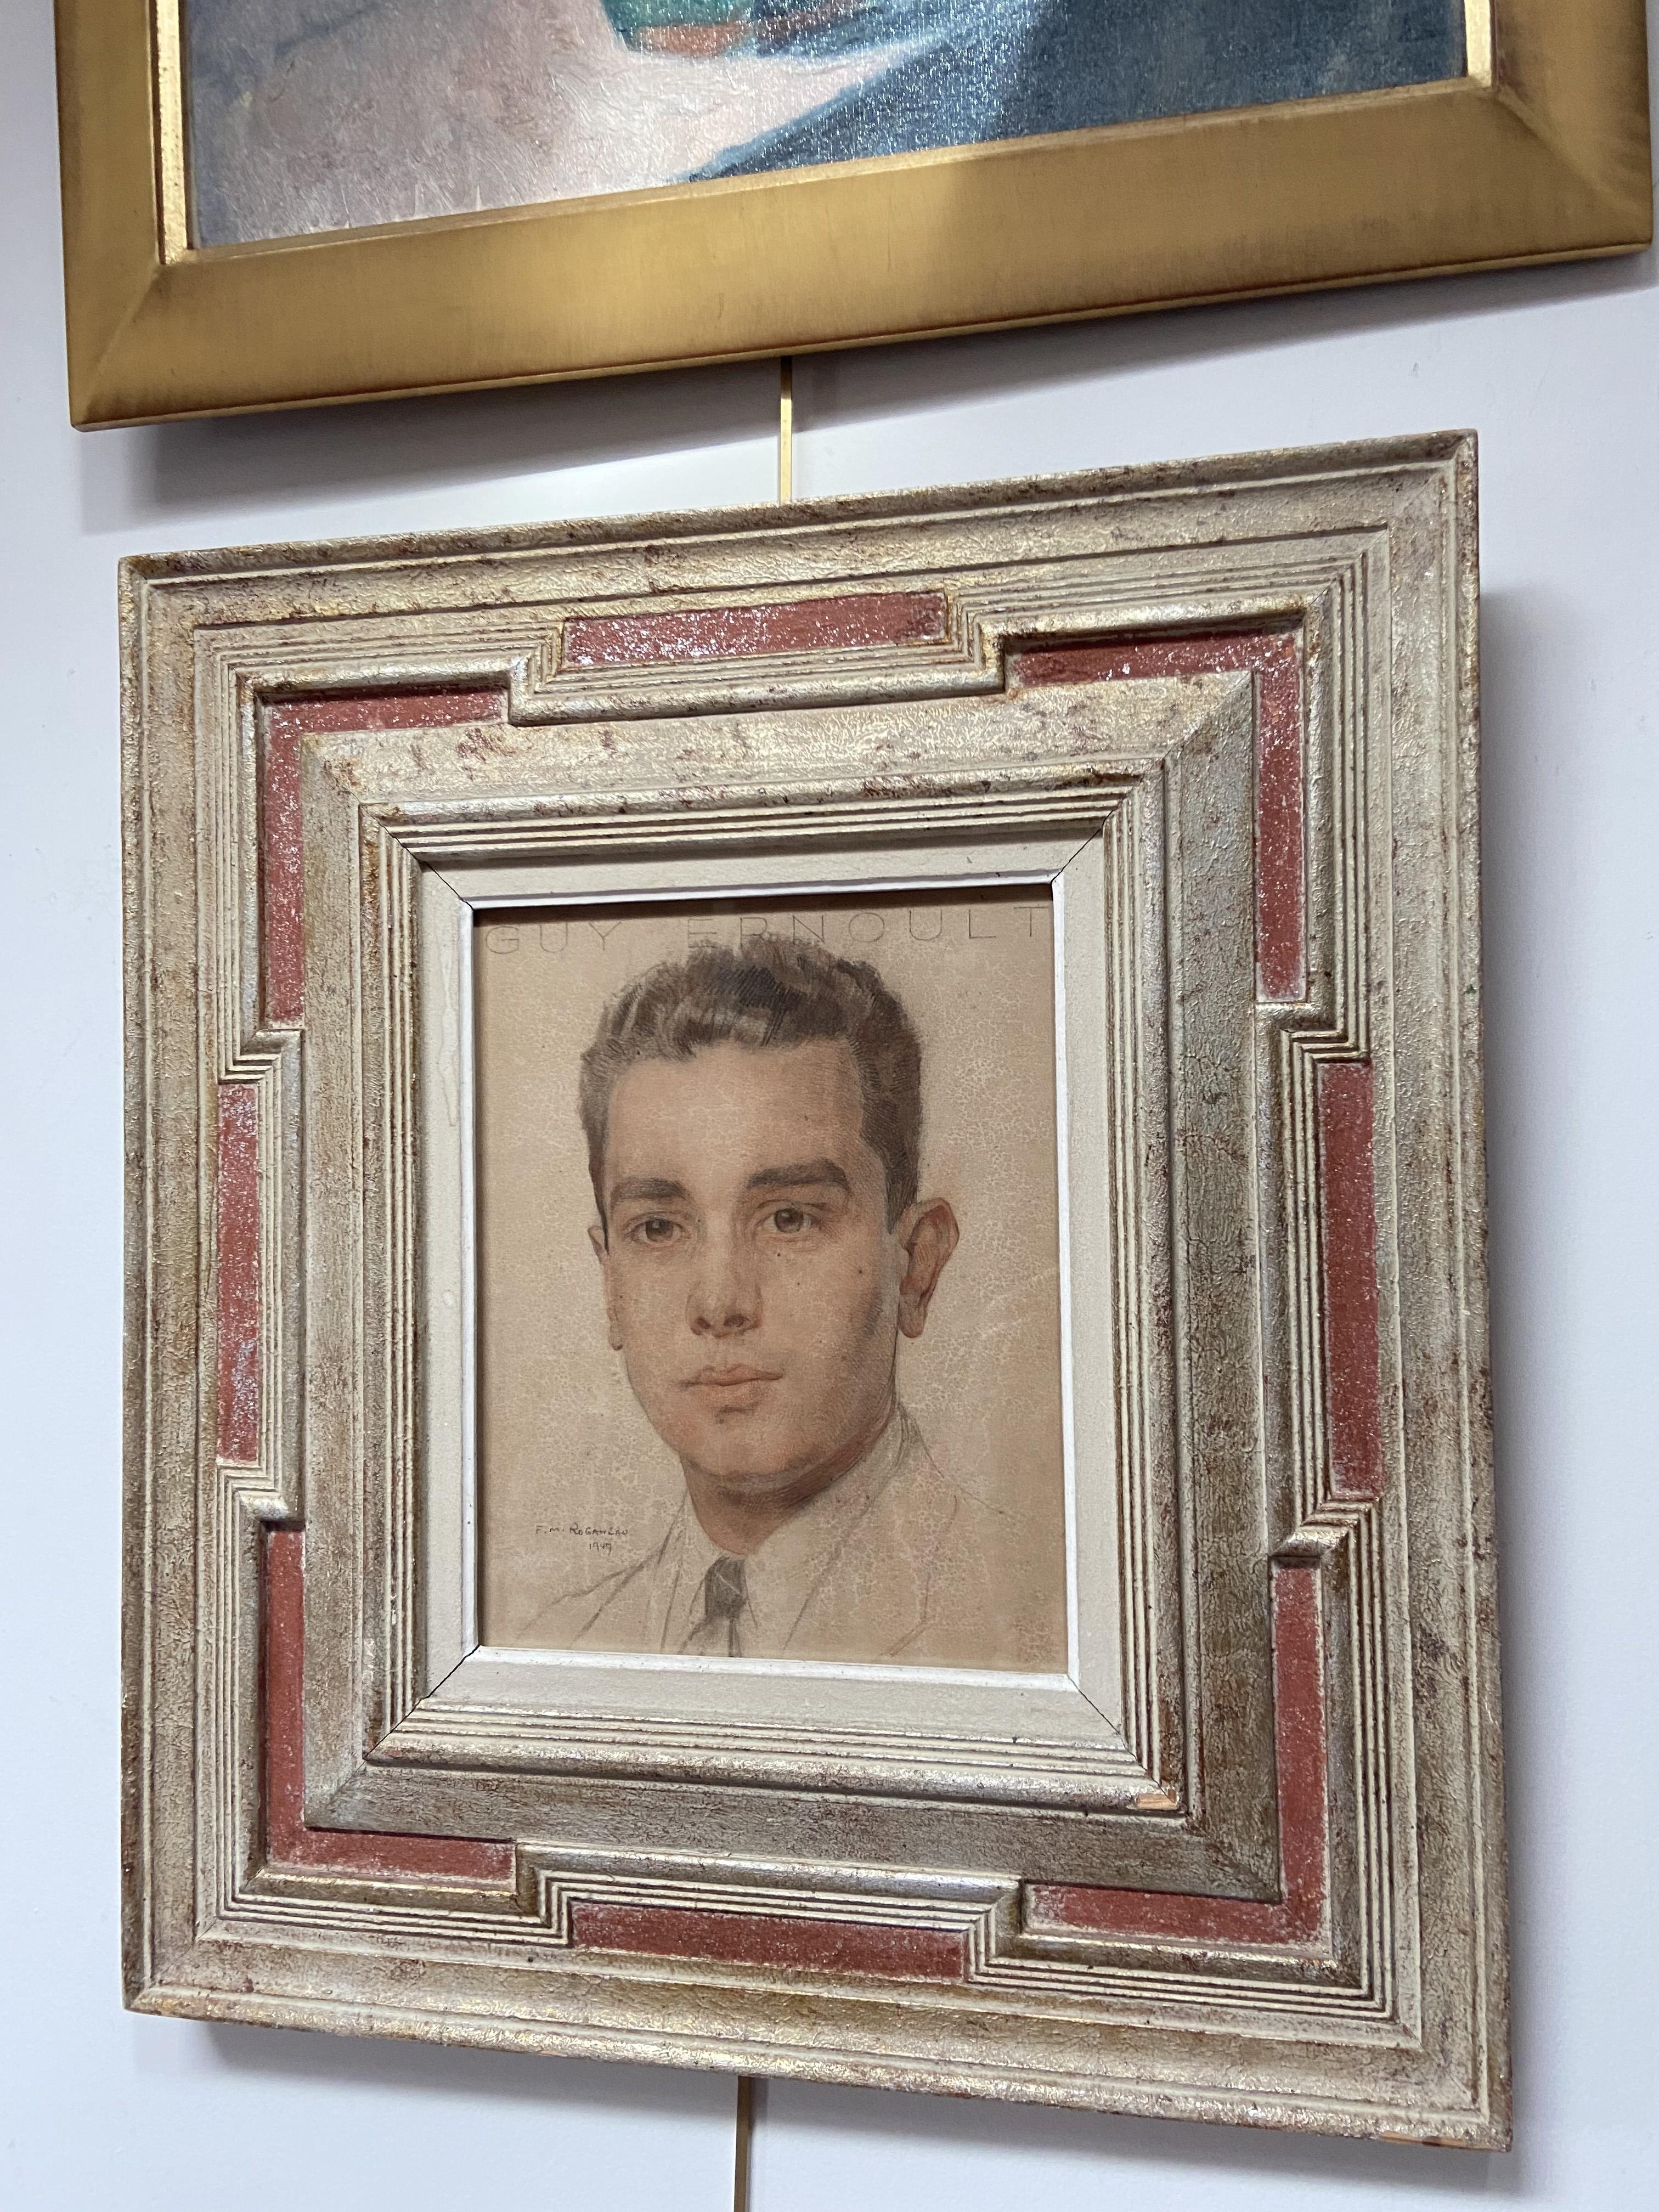 François-Maurice Roganeau (1883-1973) 
Porträt eines jungen Mannes, 1947
signiert und datiert unten links
Oben betitelt Guy Ernoult (Name des Dargestellten)
27 x 22 cm
in einem schönen Rahmen : 50,5 x 45 cm (einige kleine